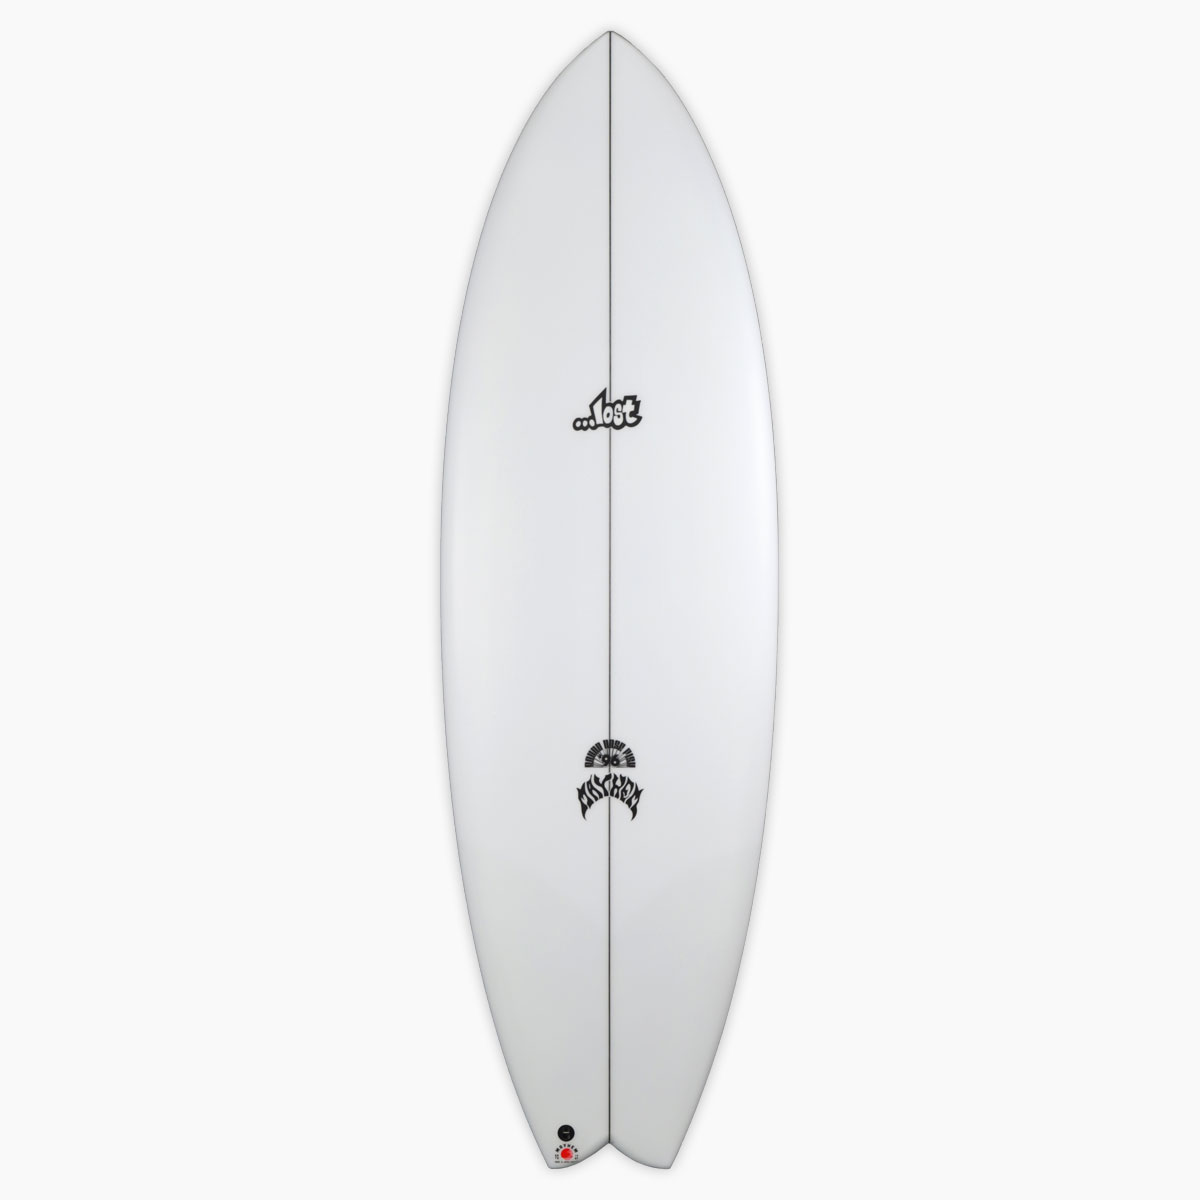 SurfBoardNet ブランド:LOST SURFBOARDS モデル:RNF'96